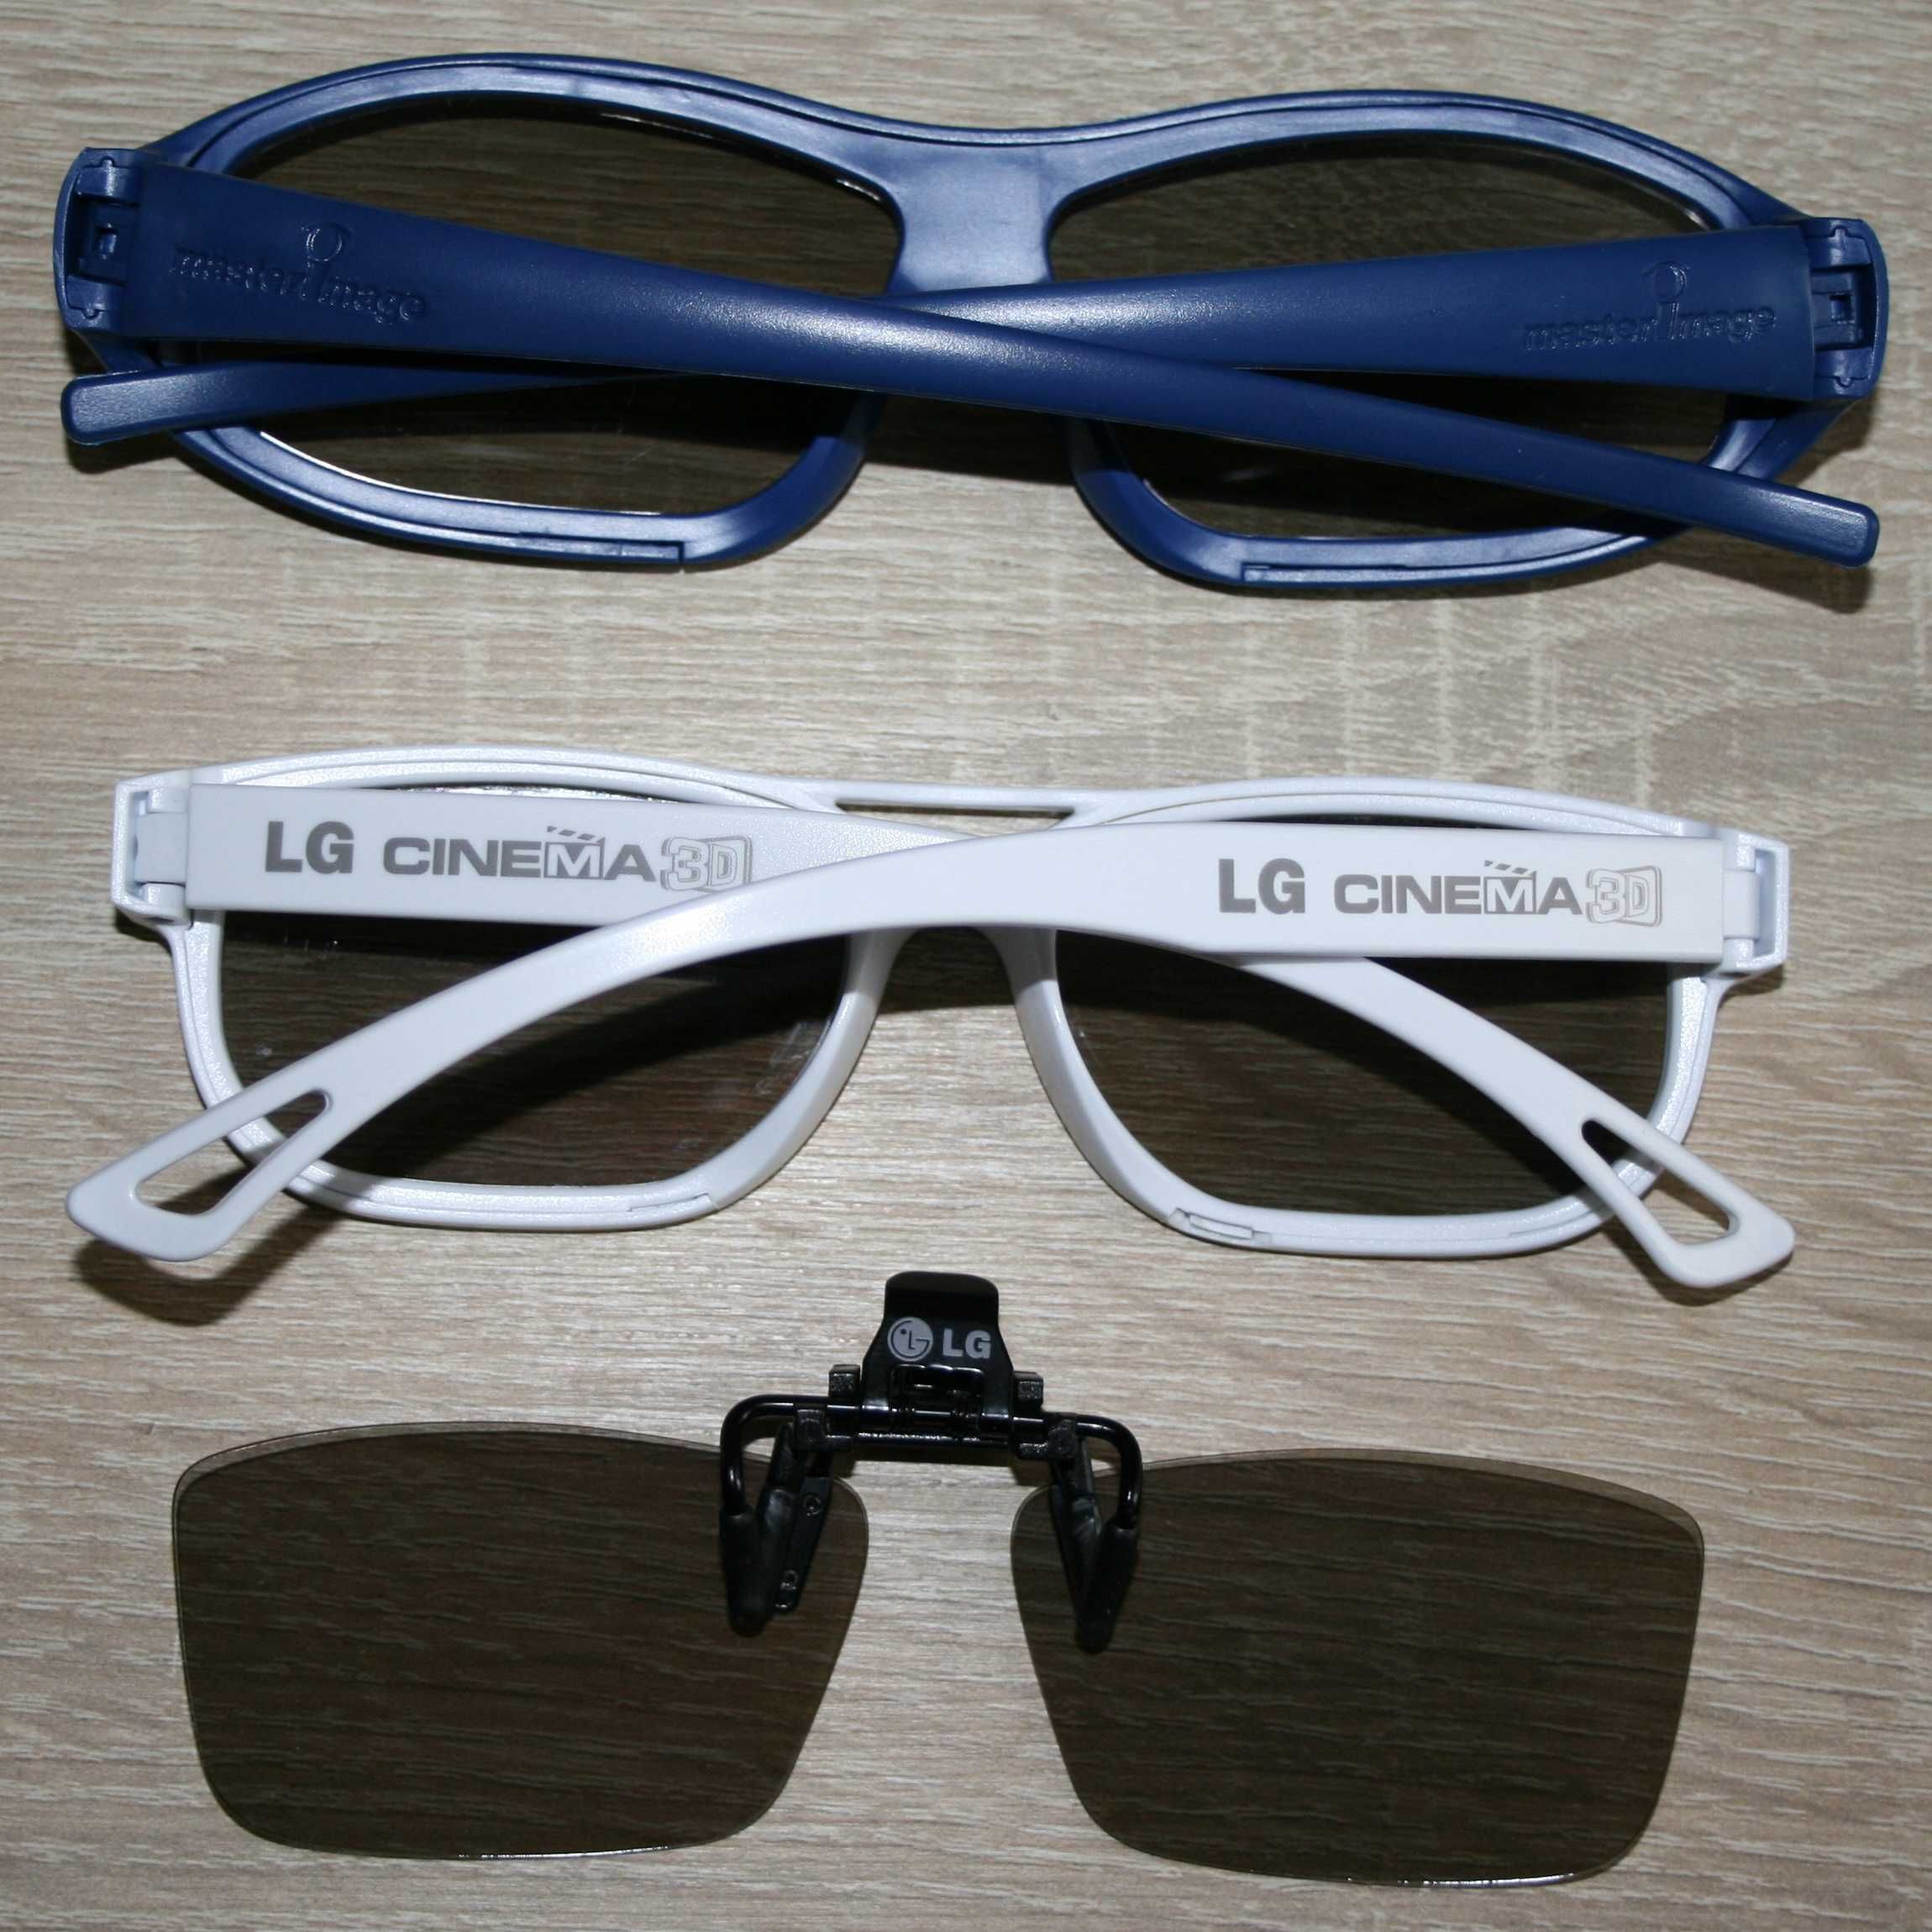 okulary 3D Master Image, LG Cinema 3D, pasywne okulary 3D LG z klipsem